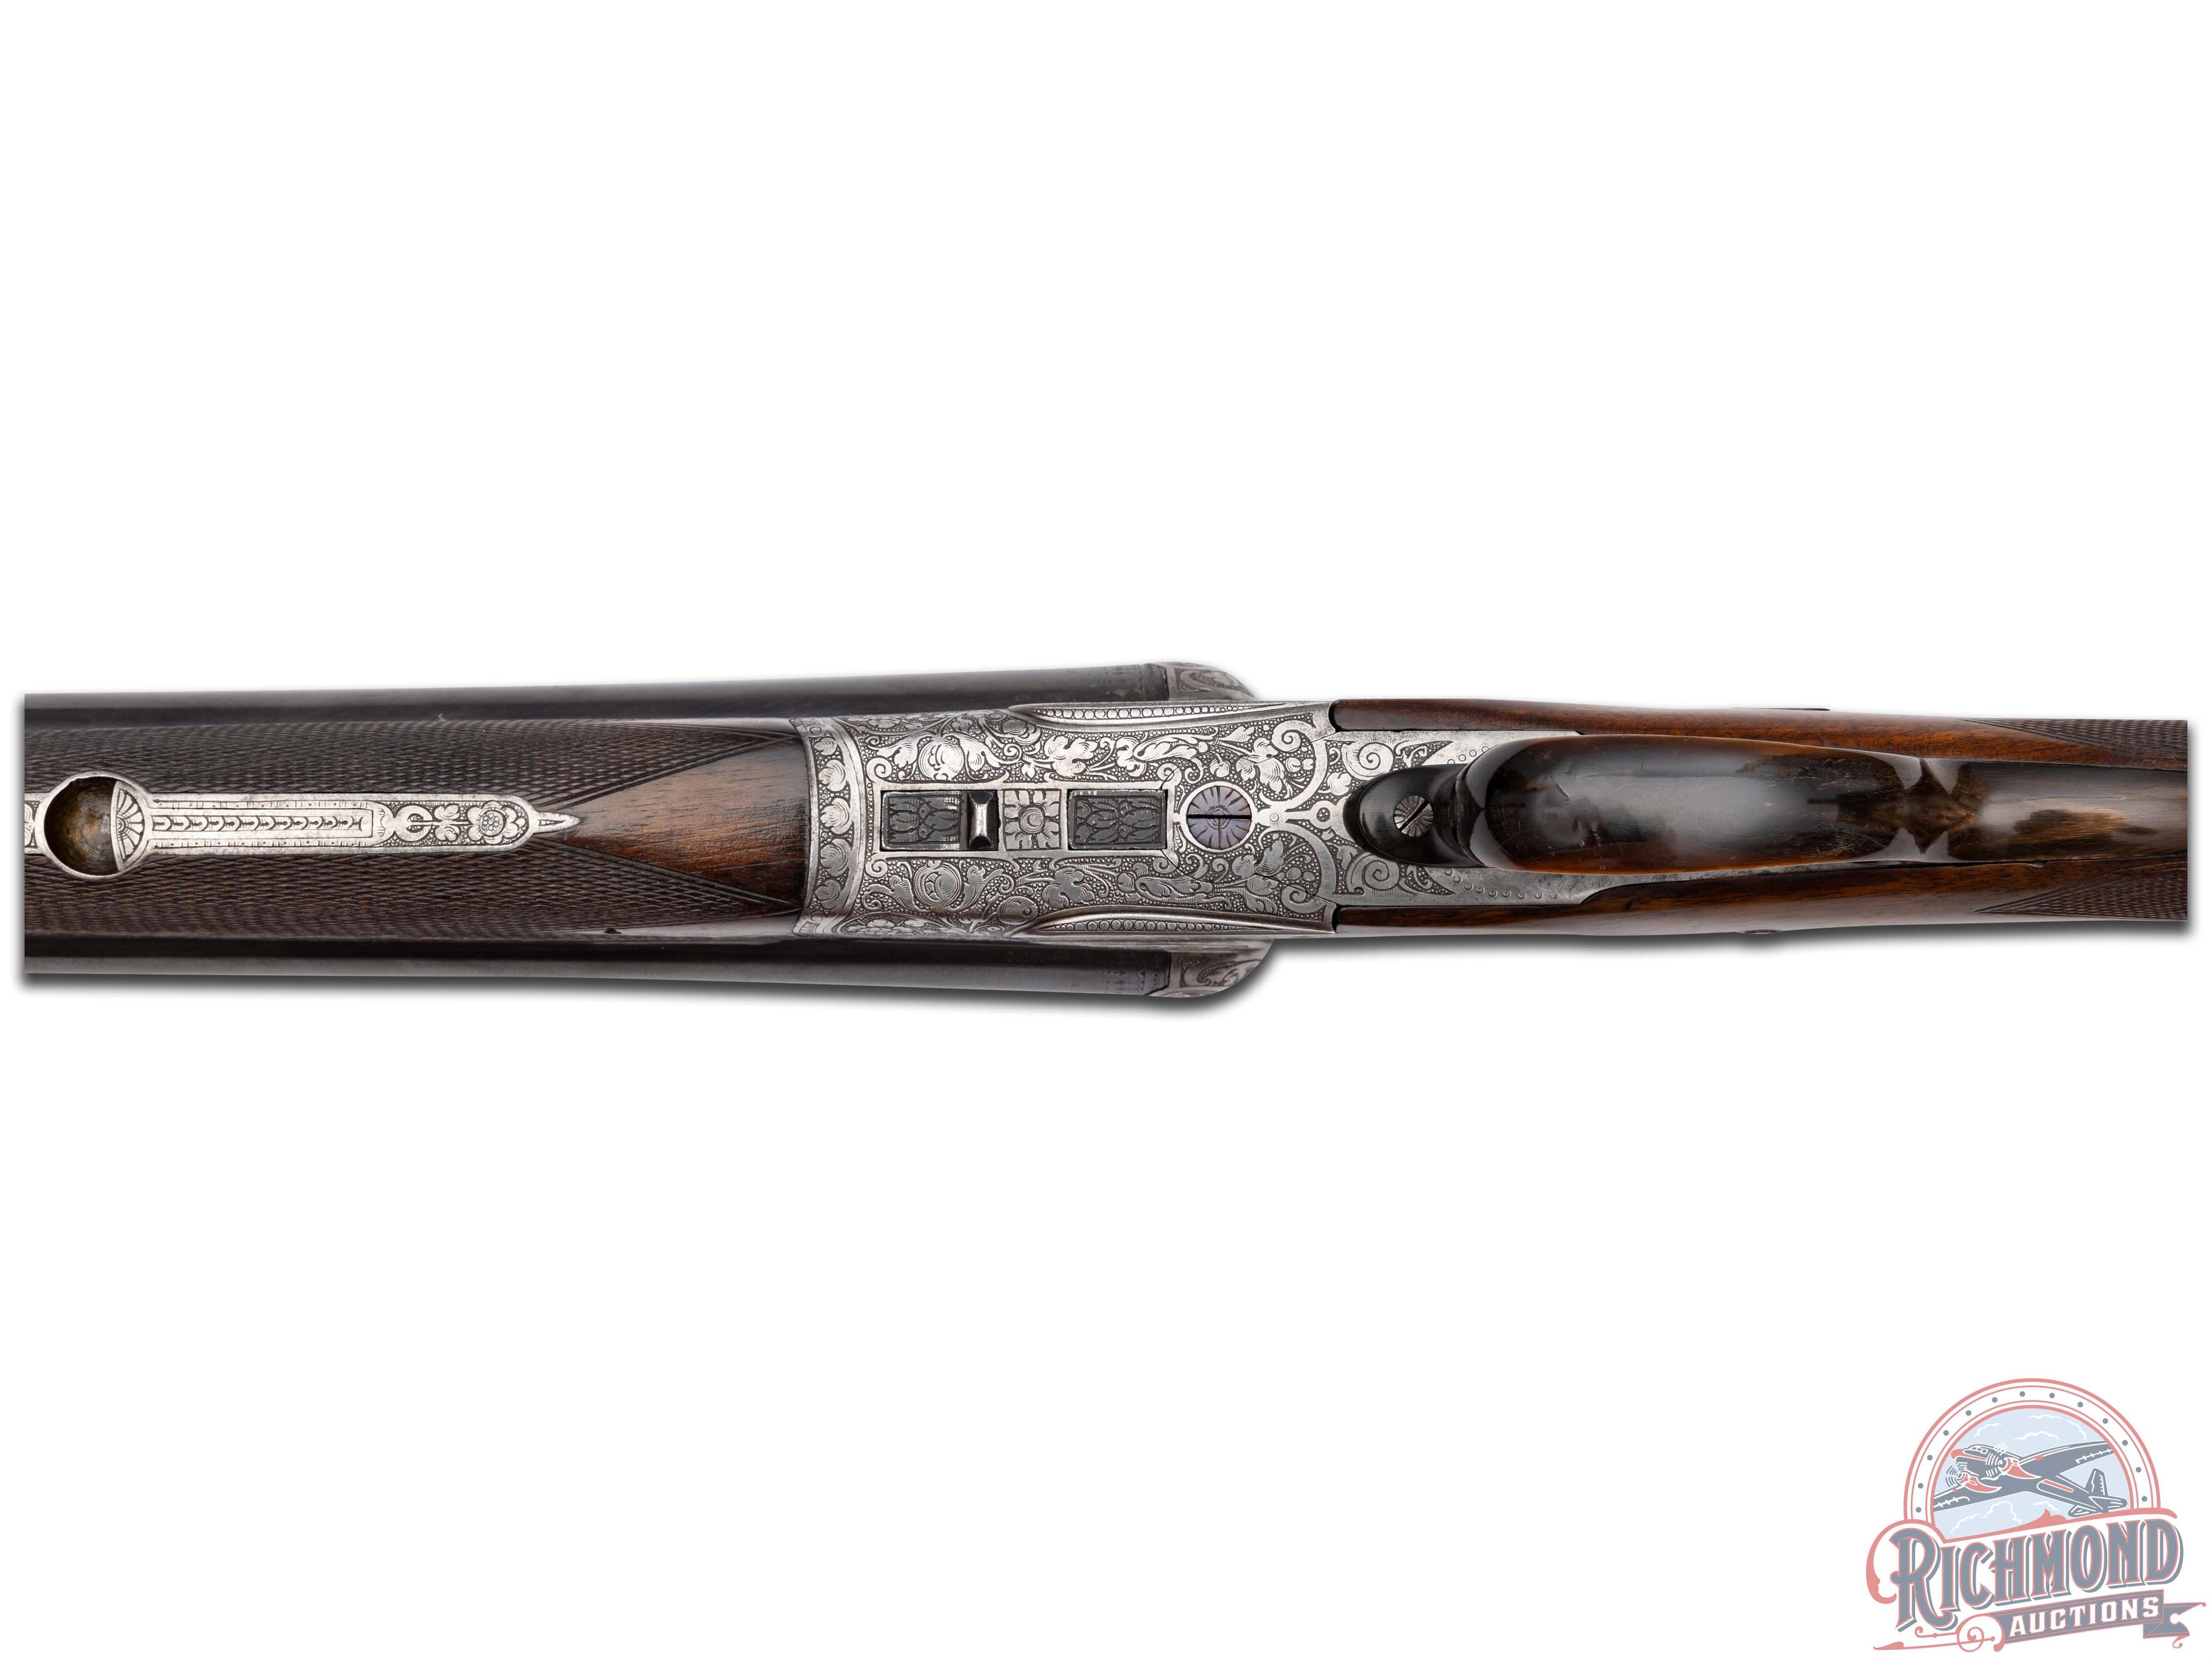 German Drilling Marked Adolf Loesche Rifle Shotgun 16 Gauge x 16 x 22 Hornet